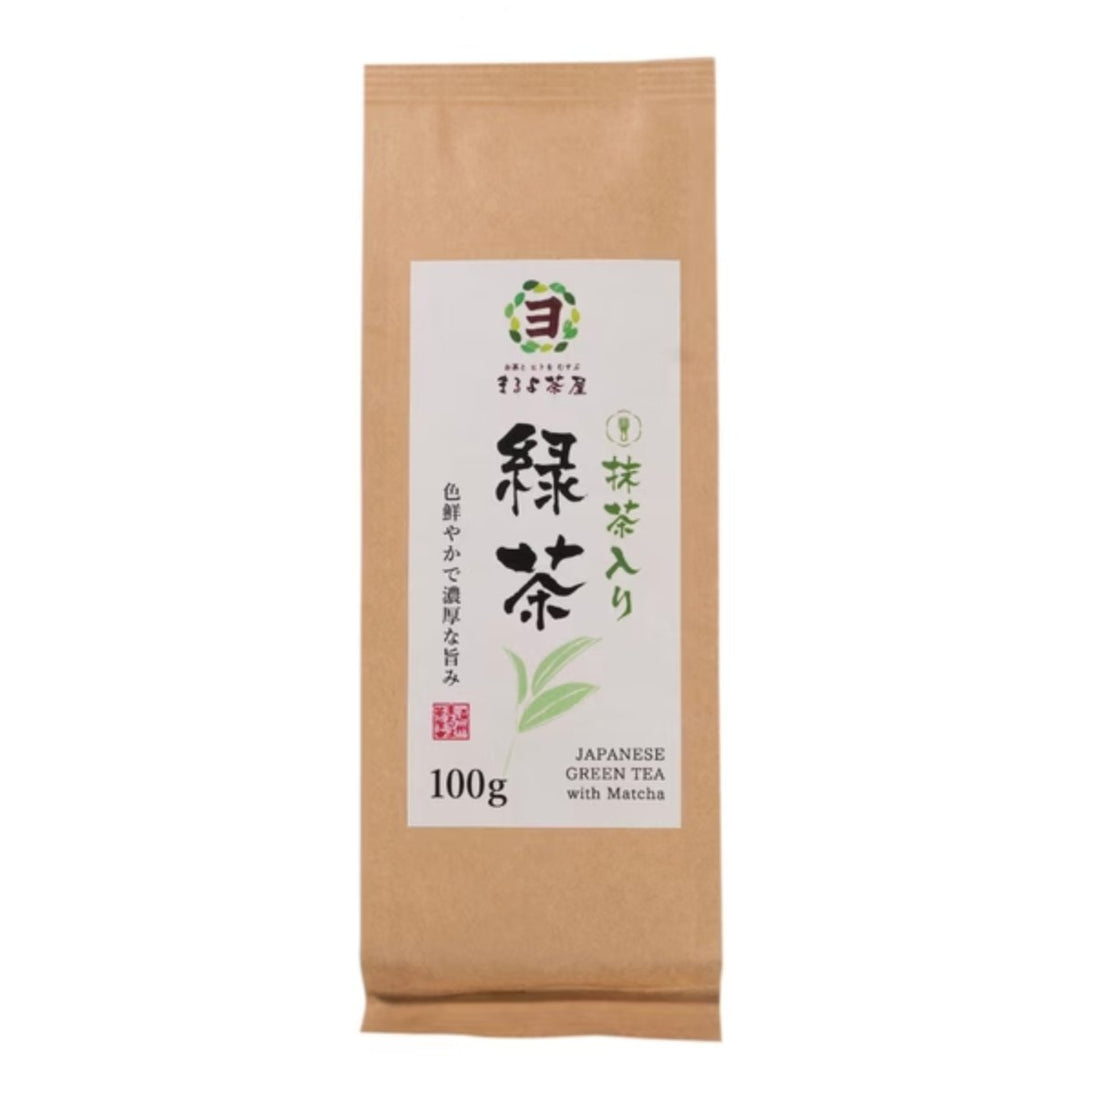 Akahori Shoten Maruyo Chaya Matcha Green Tea 100g - NihonMura